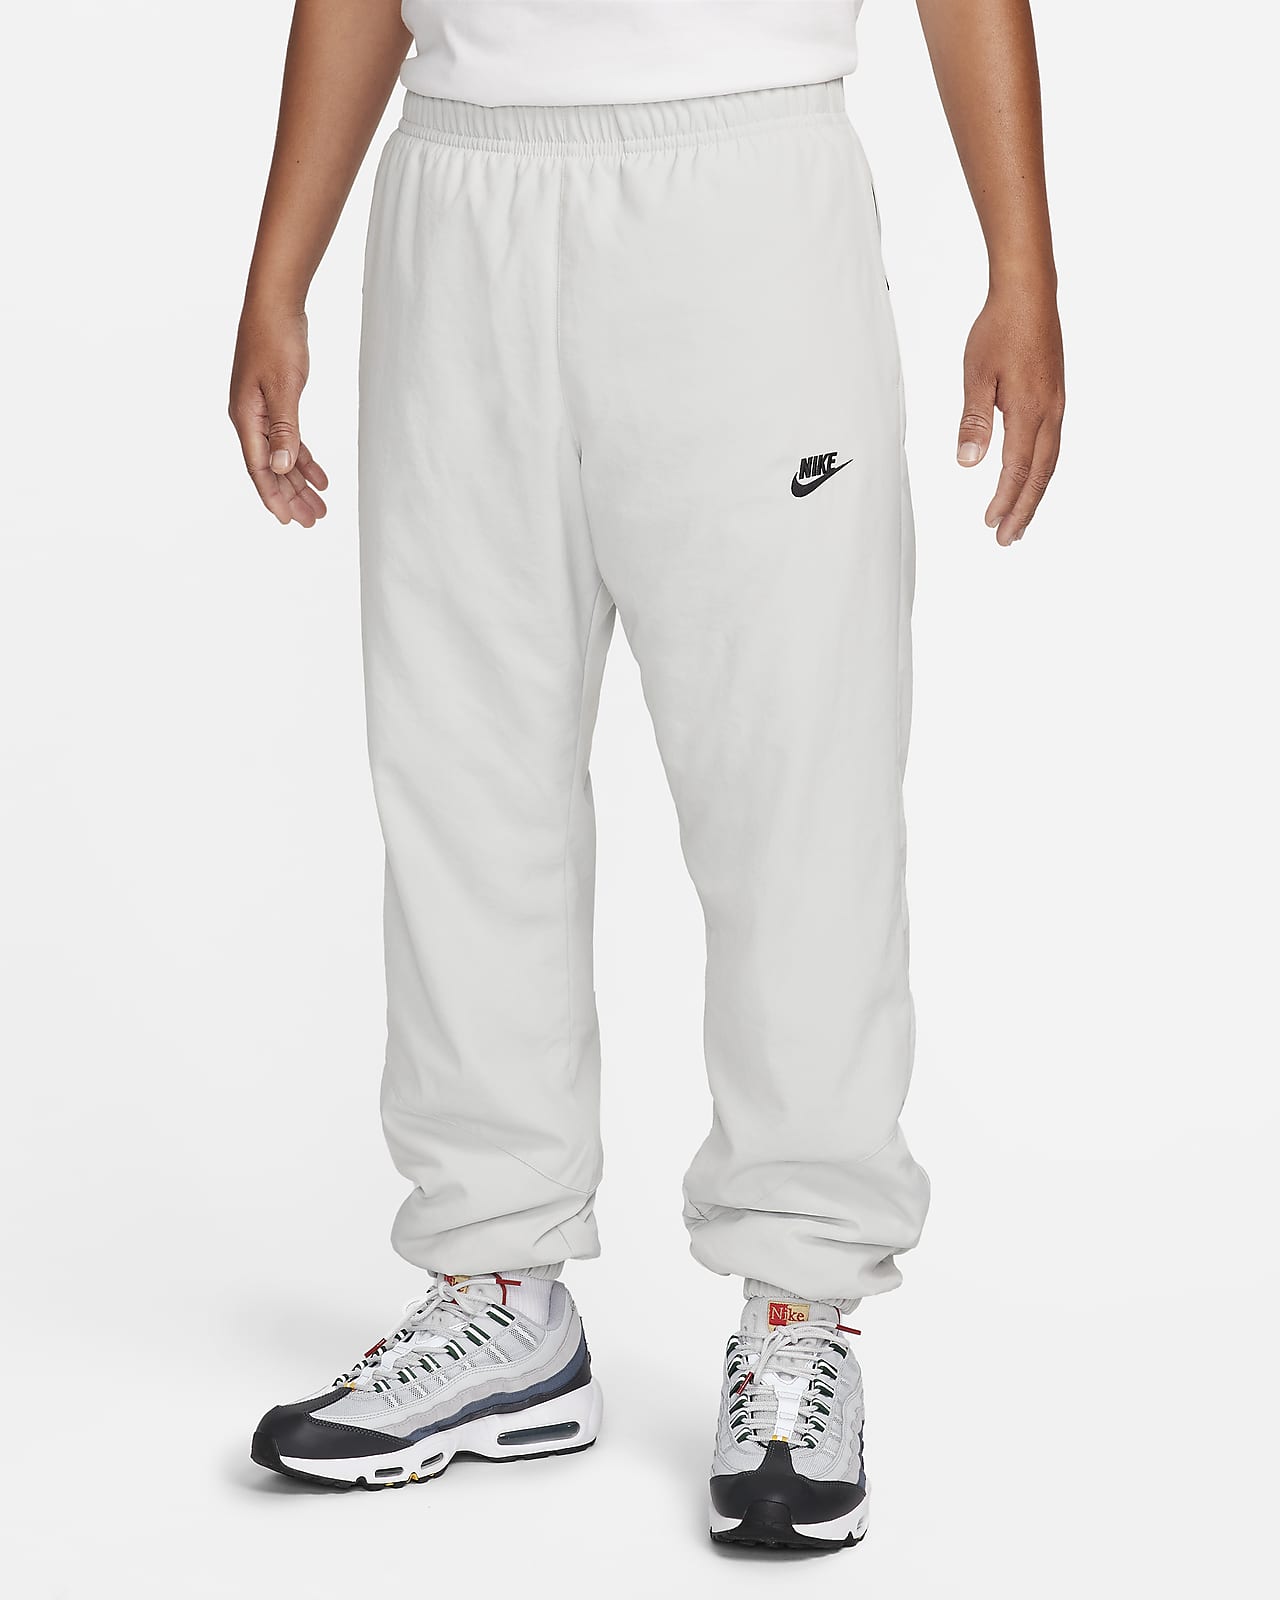 Ανδρικό χειμερινό υφαντό παντελόνι Nike Windrunner